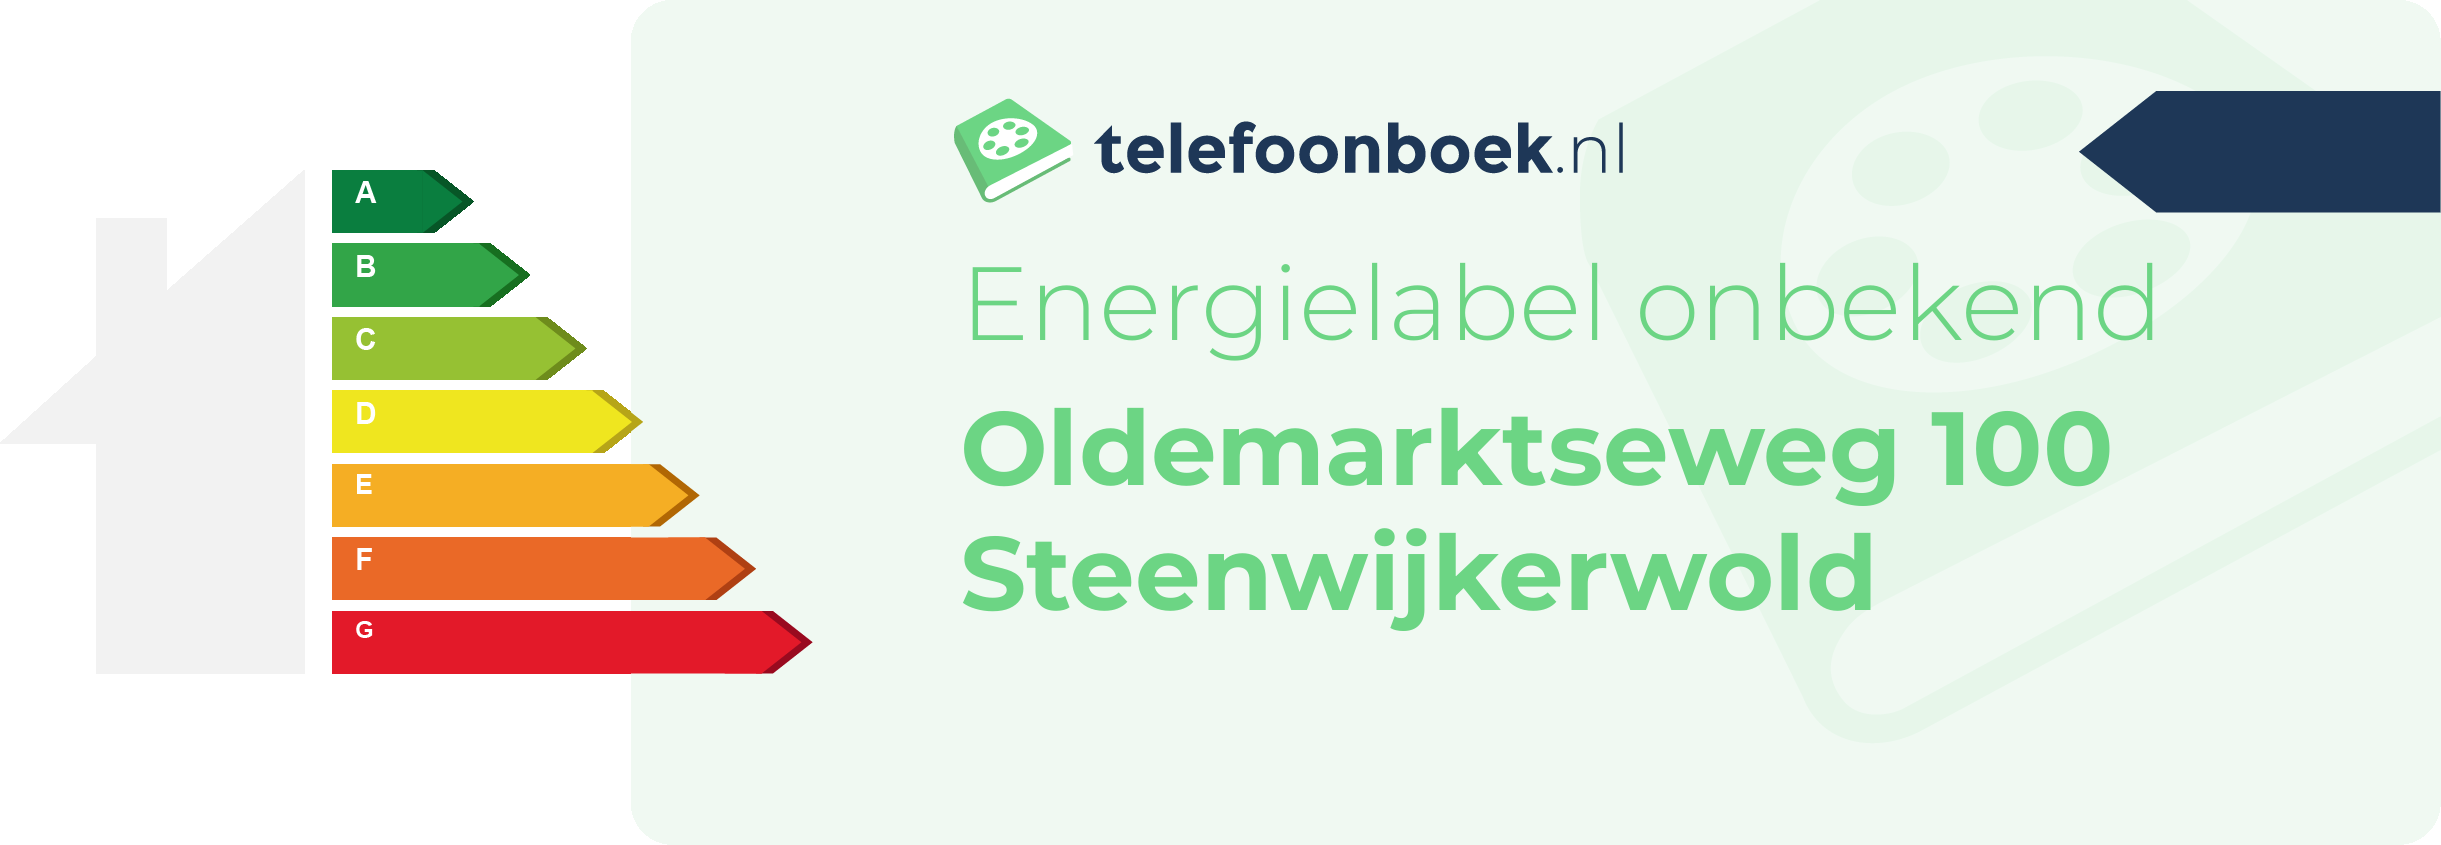 Energielabel Oldemarktseweg 100 Steenwijkerwold